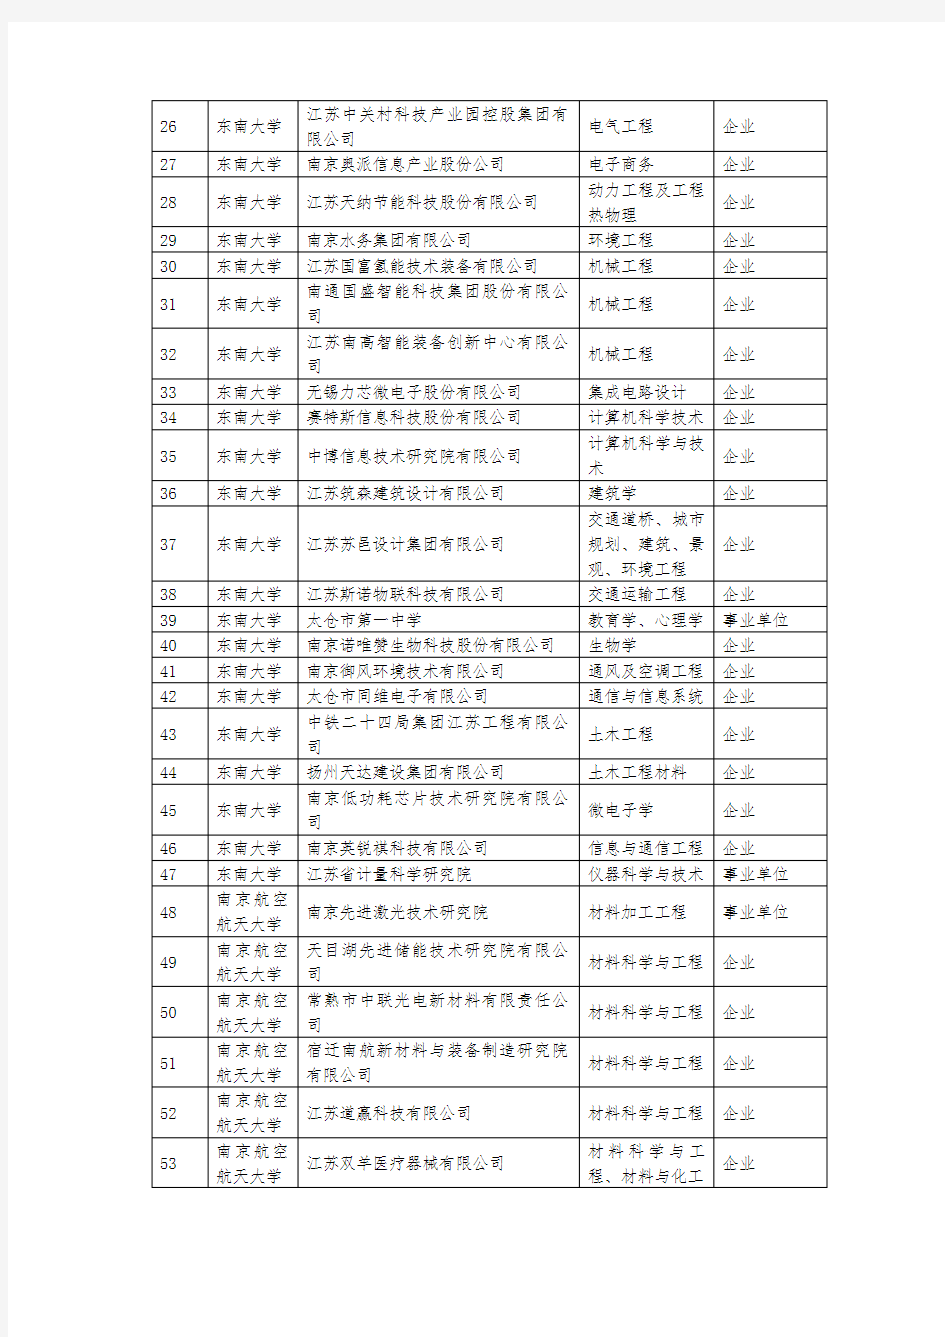 2020年江苏省研究生工作站拟认定名单